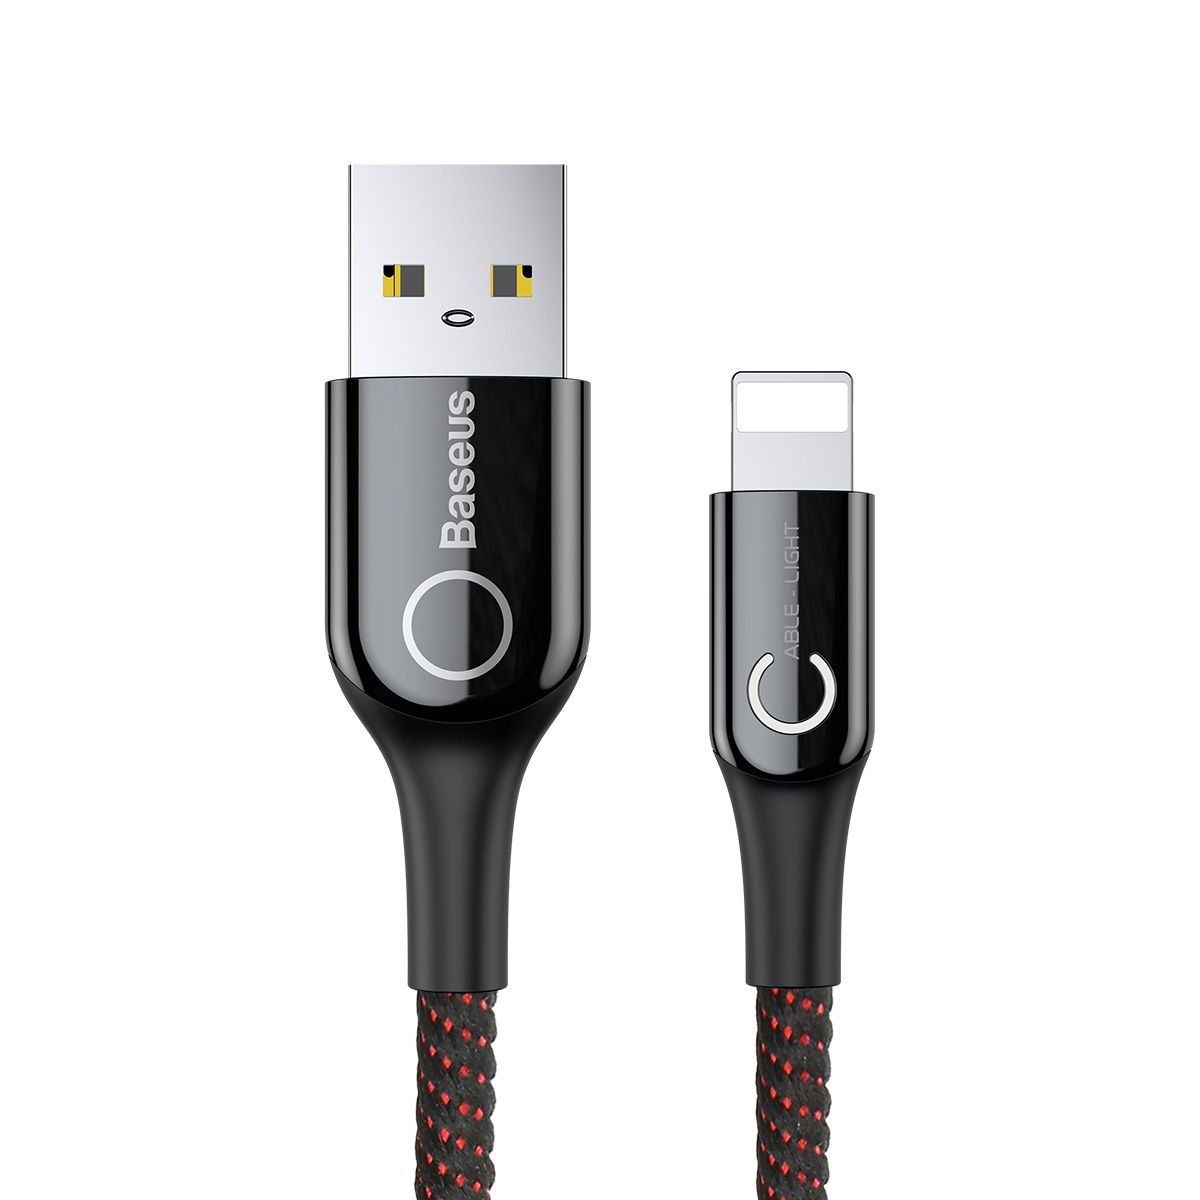  Кабель Baseus C-shaped USB - Lightning 2.4A (CALCD), цвет- черный+красный, длина -  1м